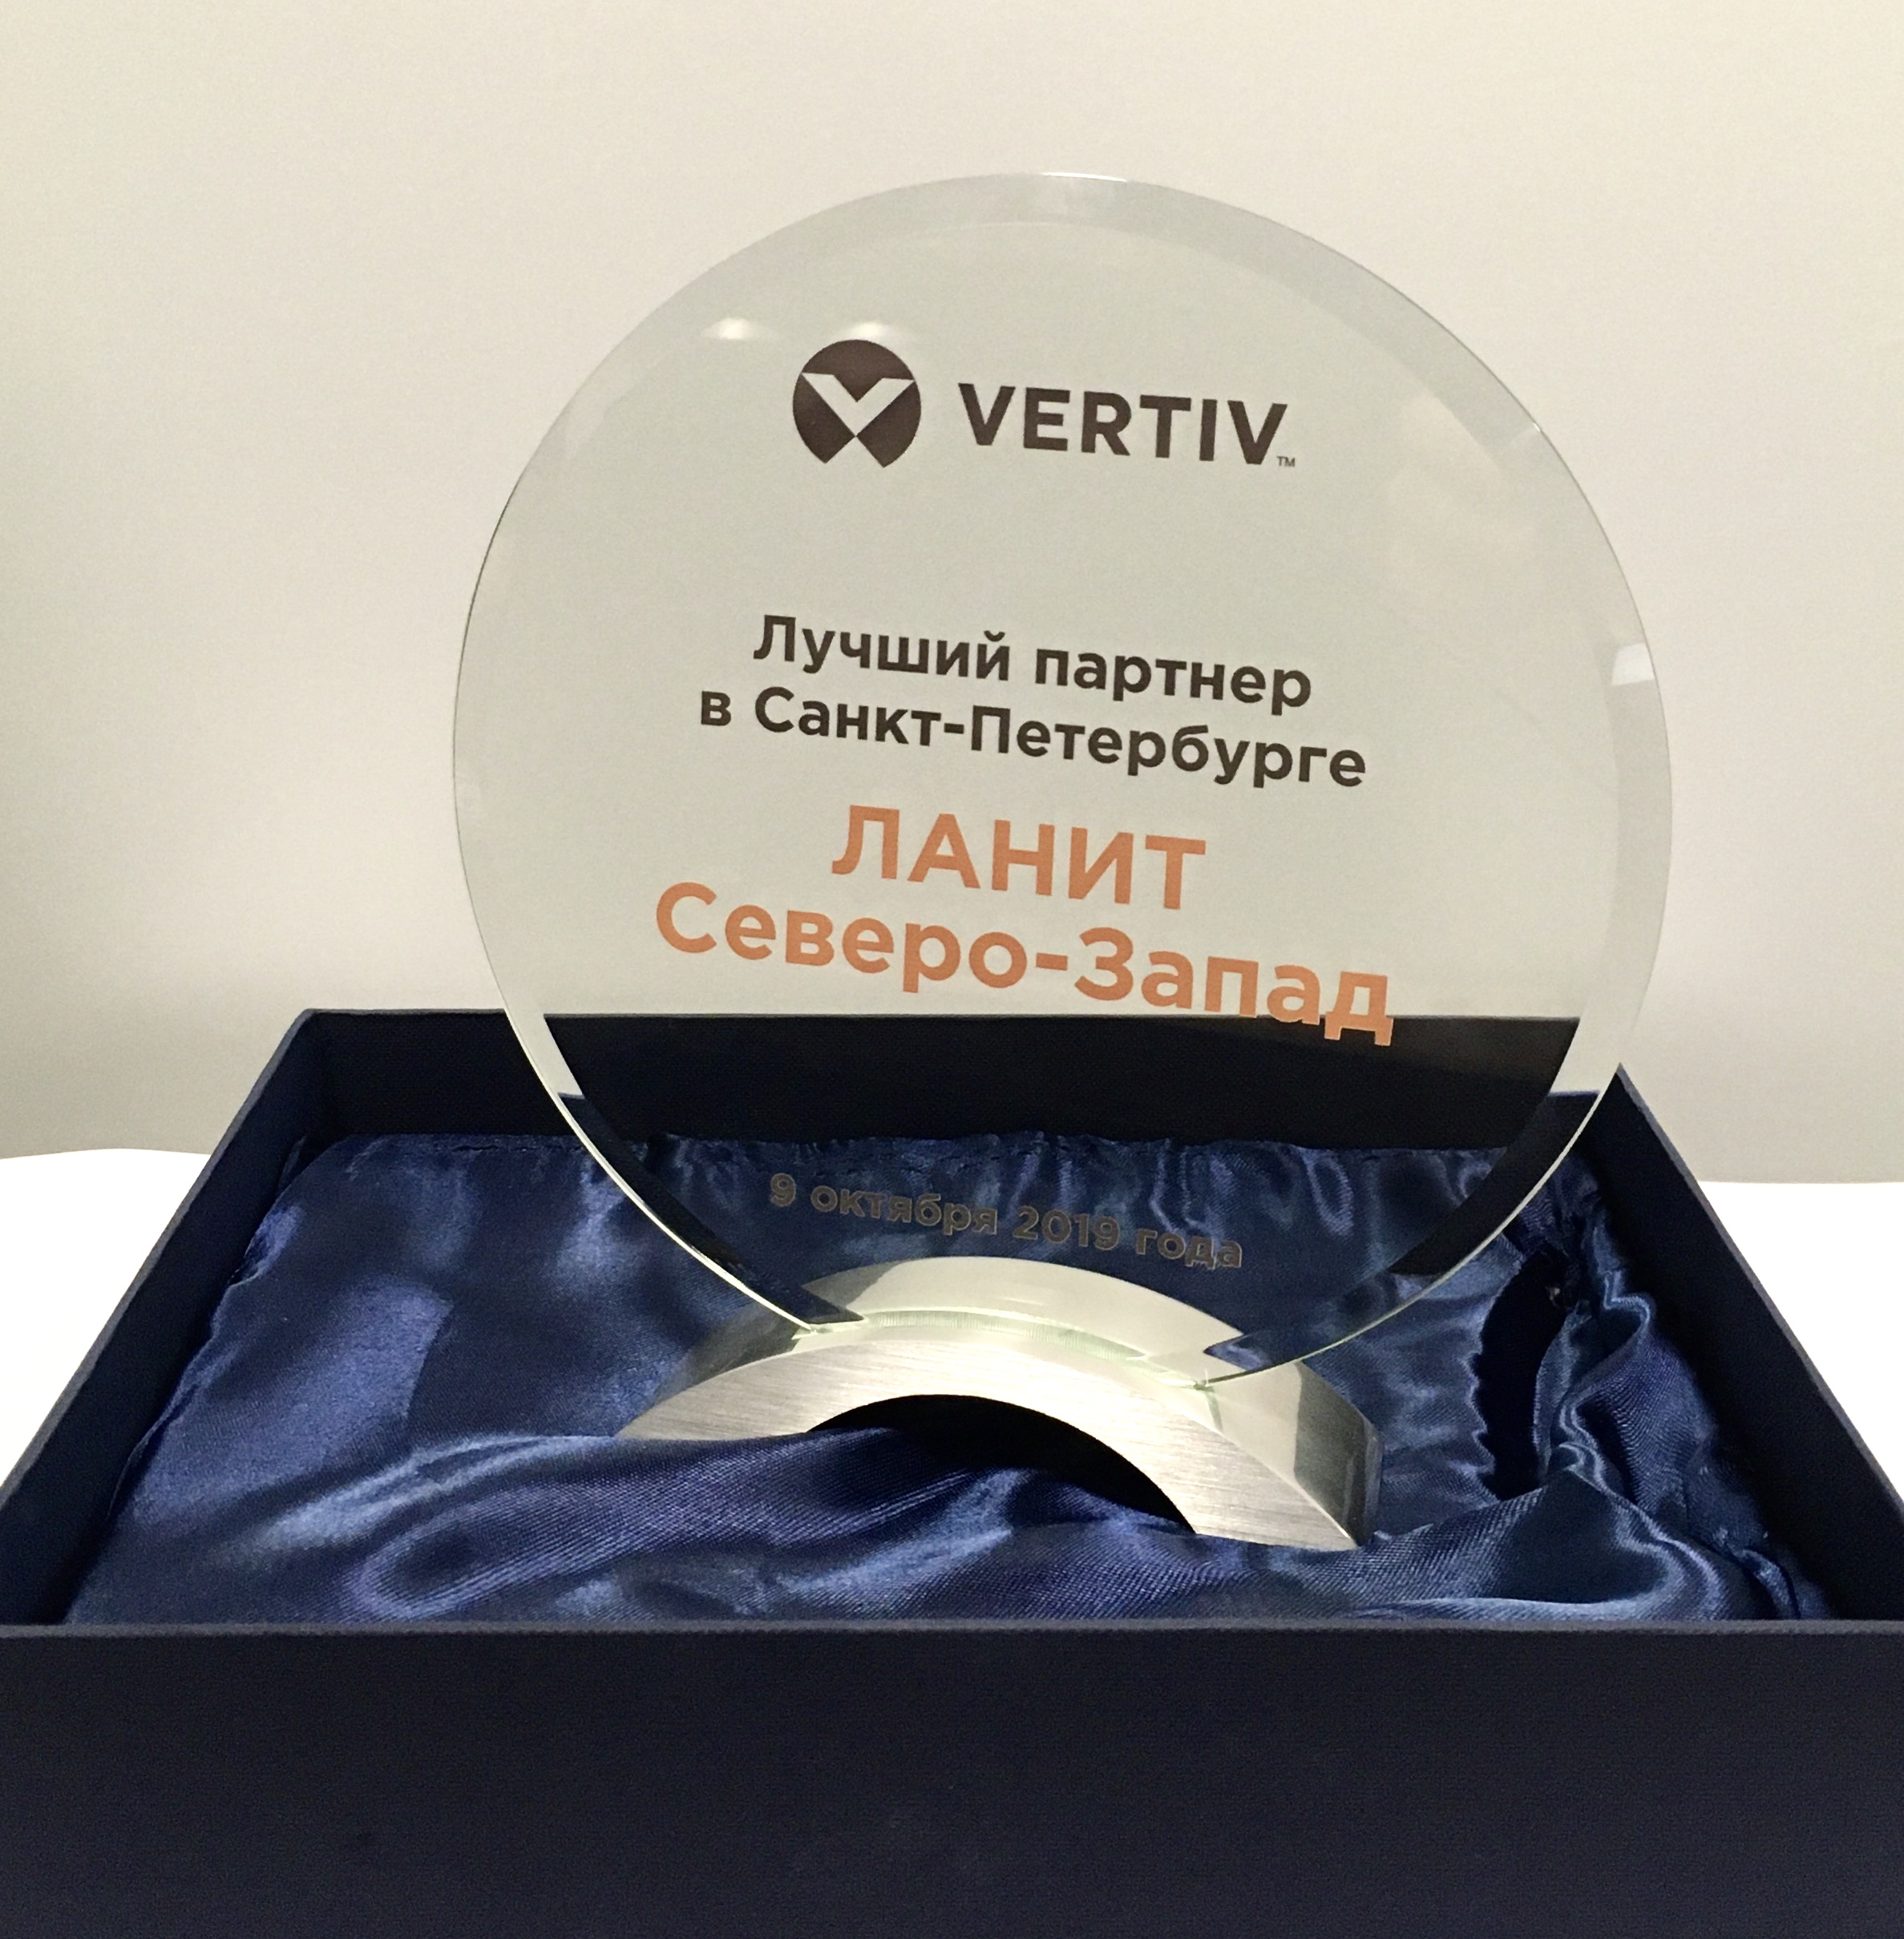 «ЛАНИТ Северо-Запад» стал лучшим партнером Vertiv в Санкт-Петербурге 